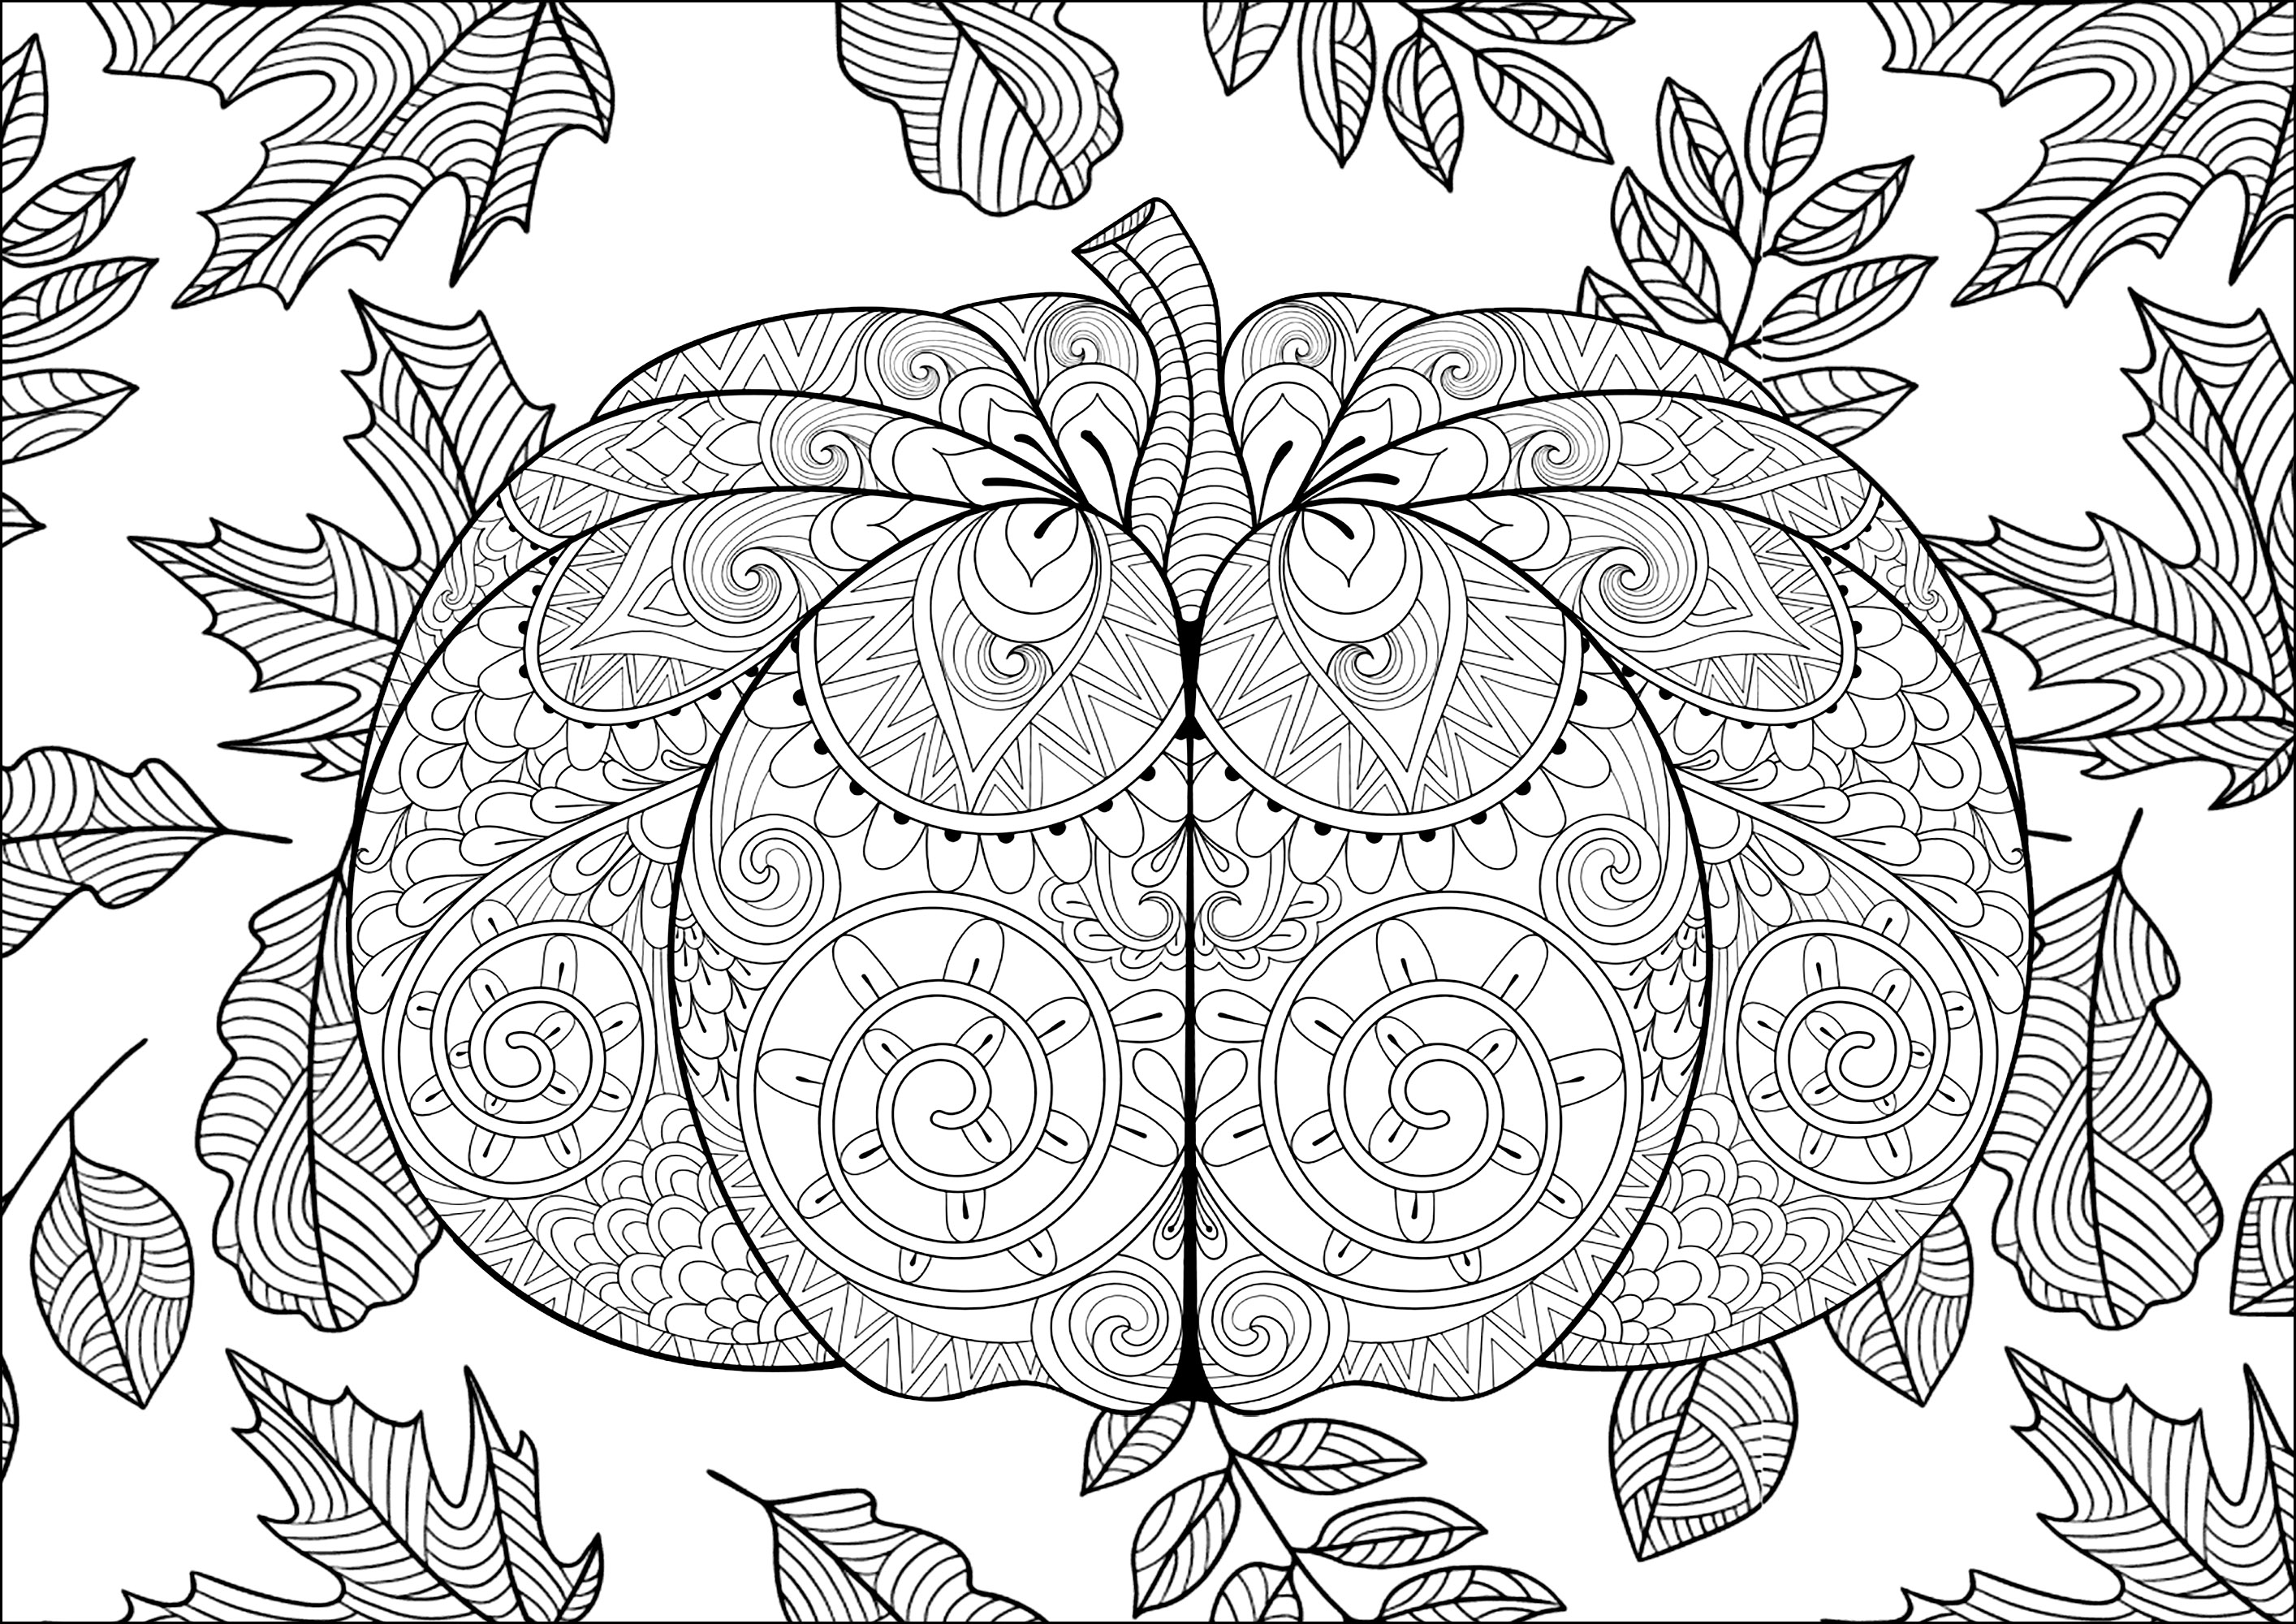 Zucca grande di Halloween. Colorare tutti i motivi delle zucche e le foglie sullo sfondo, Fonte : 123rf   Artista : Ipanki